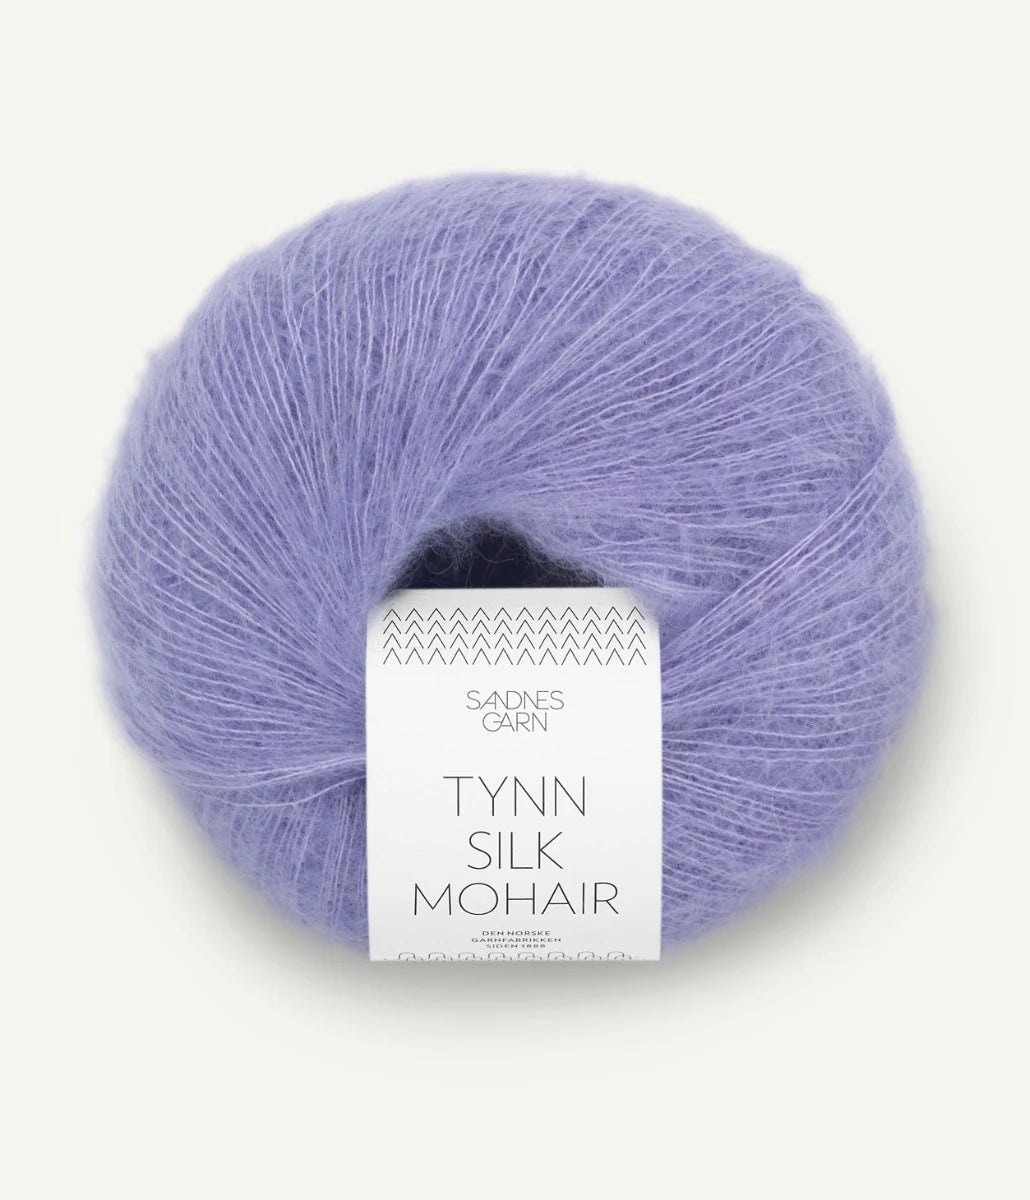 Kuvassa on Sandnes Garn Tynn Silk Mohair -lanka (yarn) värissä Lys Krokus.